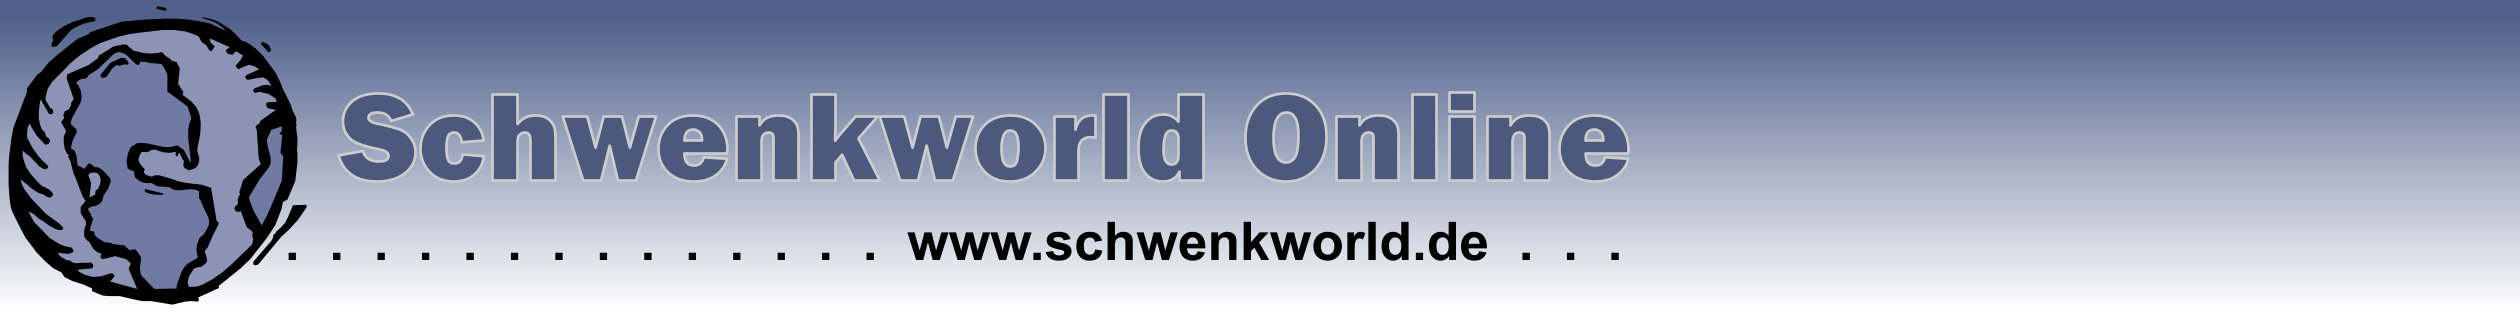 Schwenkworld Online - Das Portal